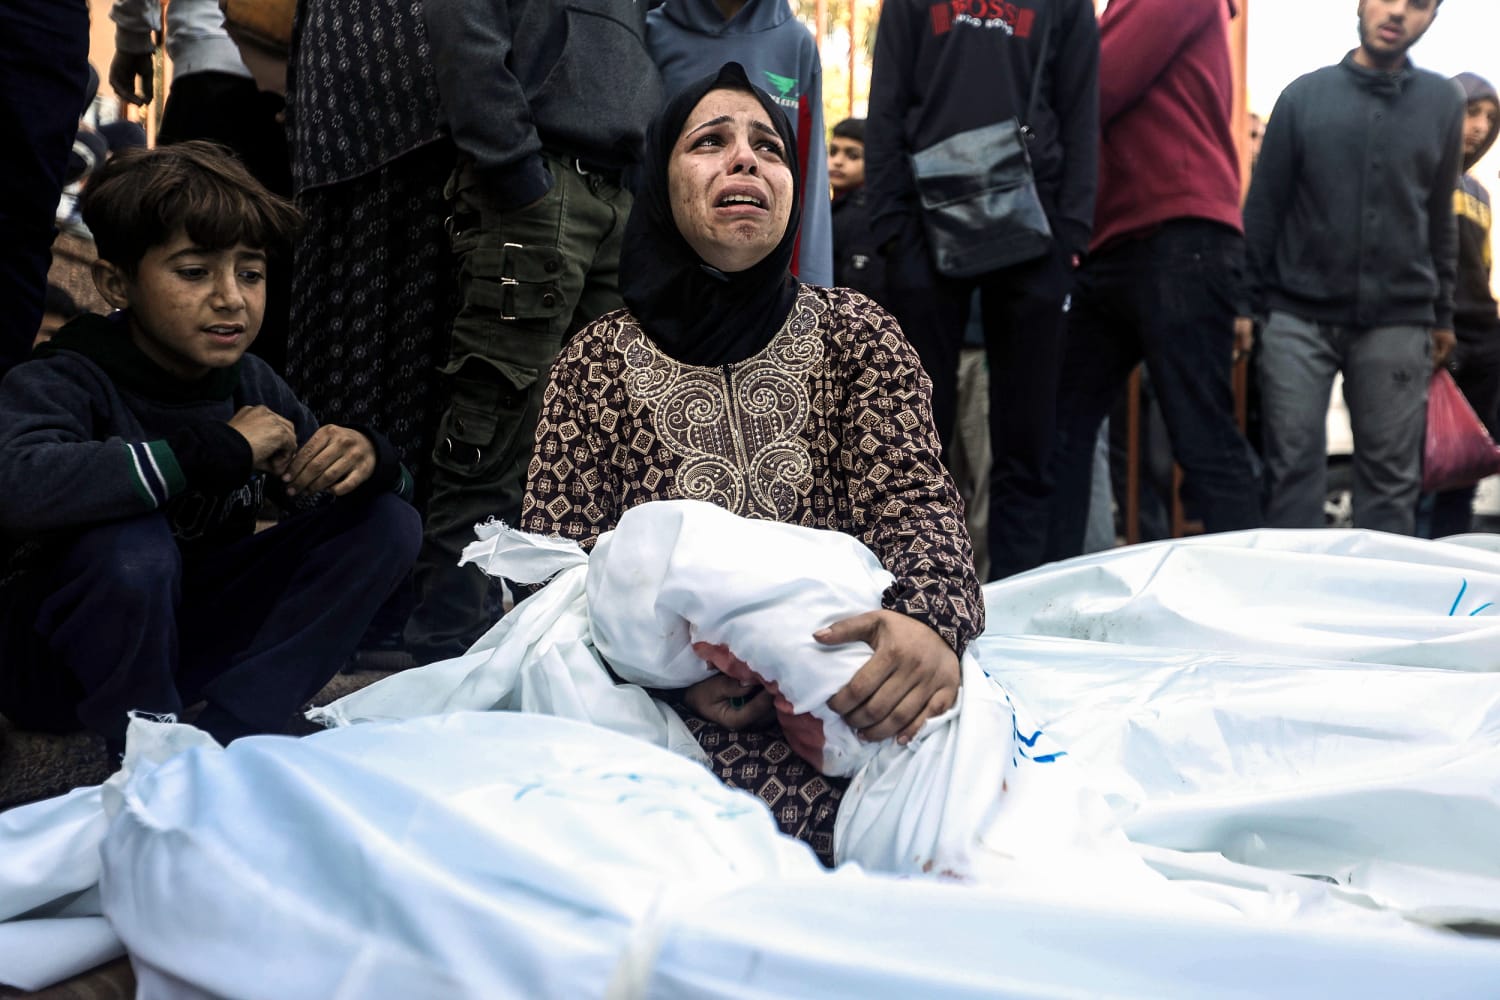 ويتزايد الدعم الفلسطيني لـ “الكفاح المسلح” مع وصول عدد القتلى في غزة إلى 20 ألف شخص